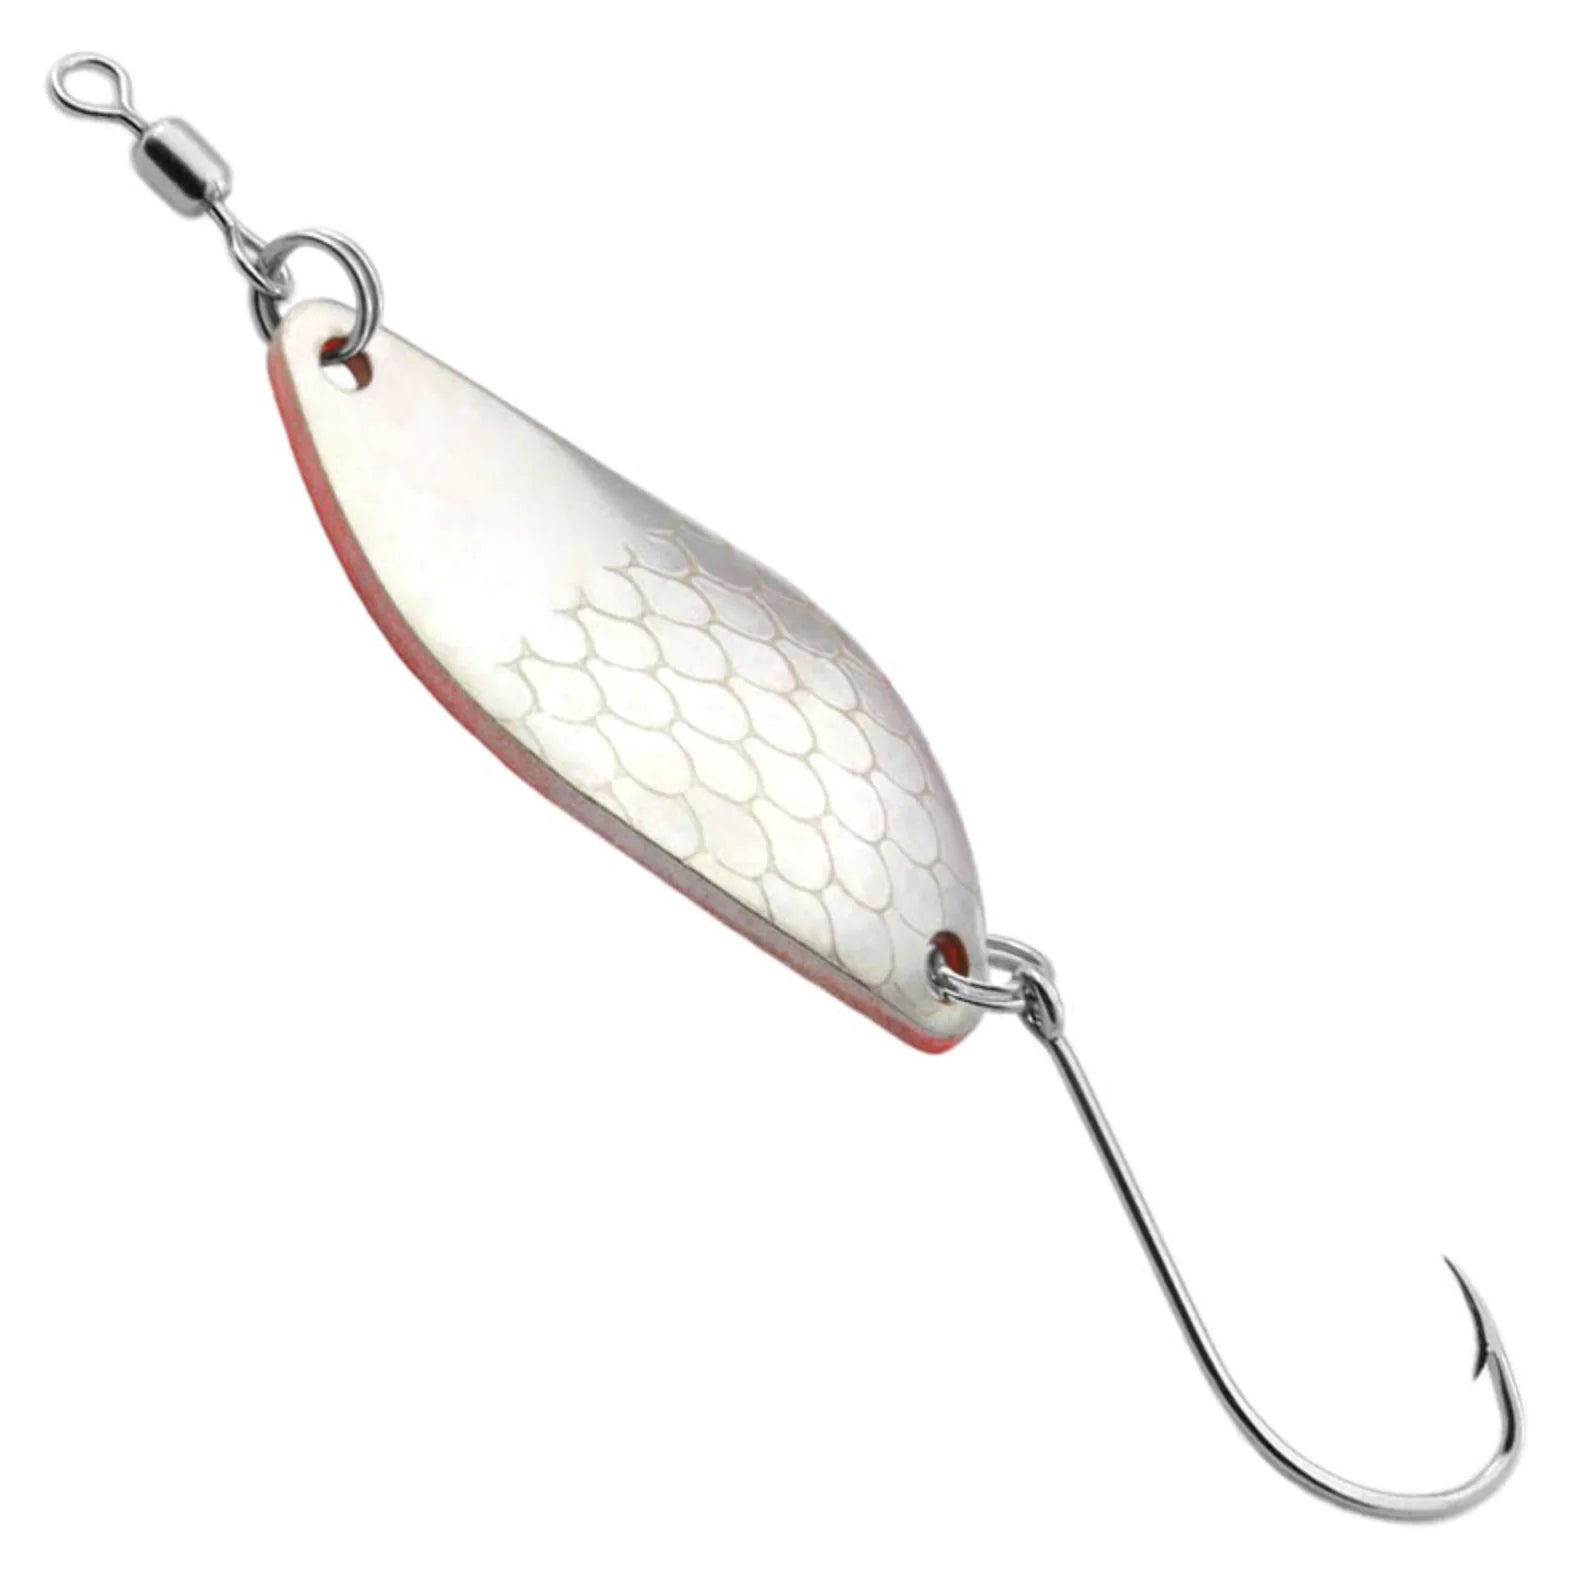 Gibbs Delta Koho Spoon For Freshwater Salmon and Trout